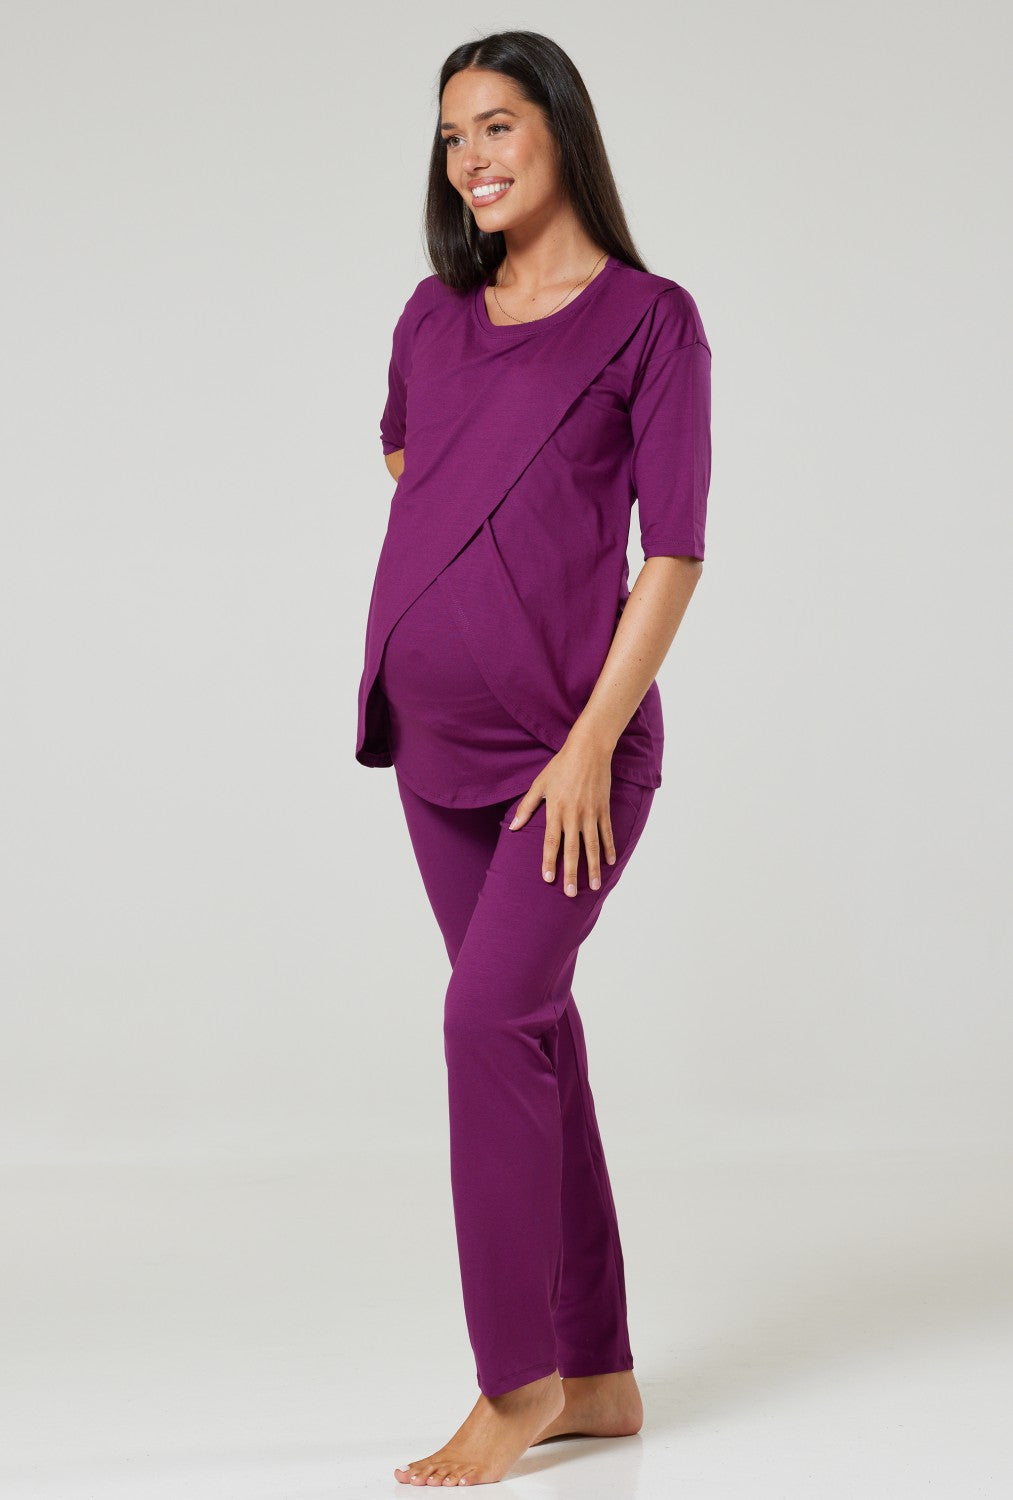 Maternity Nursing Pyjamas/ Loungewear